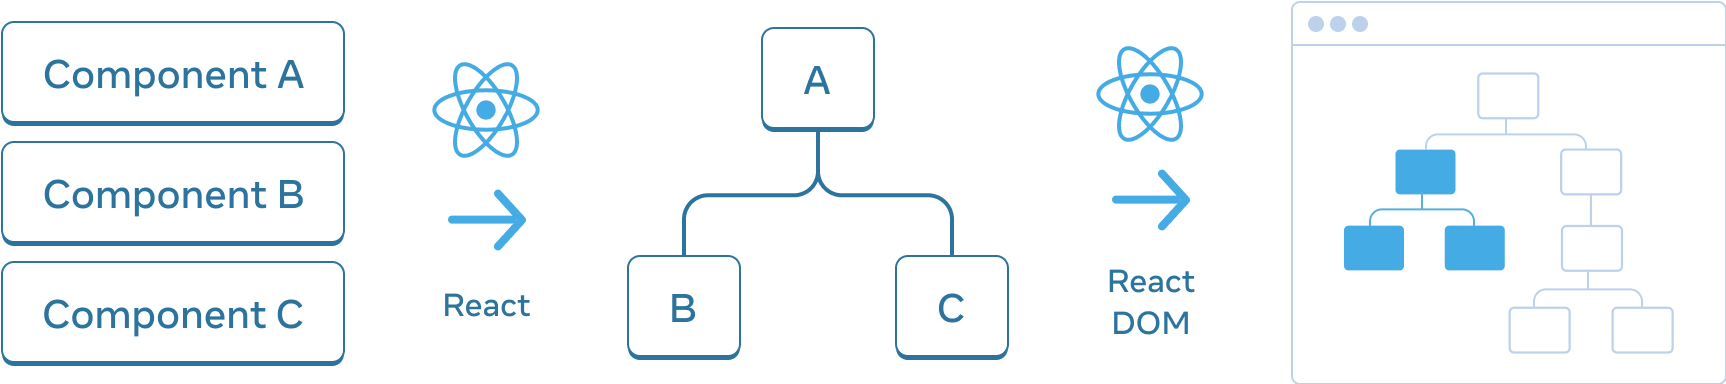 Yatay olarak düzenlenmiş üç bölümden oluşan diyagram. İlk bölümde, 'A Bileşeni', 'B bileşeni' ve 'C Bileşeni' etiketli dikey olarak istiflenmiş üç dikdörtgen vardır. Bir sonraki bölüme geçişi gösteren 'React' etiketli ve üstünde React logosu olan bir ok vardır. Orta bölümde bir bileşen ağacı vardır. Kök 'A' olarak ve iki alt eleman 'B' ve 'C' etiketlidir. Bir sonraki bölüme geçiş yine 'React' etiketli ve üstüne React logosu olan bir okla gösterilmiştir. Üçüncü ve son bölüm ise yalnızca bir alt kümenin vurgulandığı (orta bölümden alt ağacı gösteren) 8 node'dan oluşan bir ağaç gösteren tarayıcı wireframe'idir.